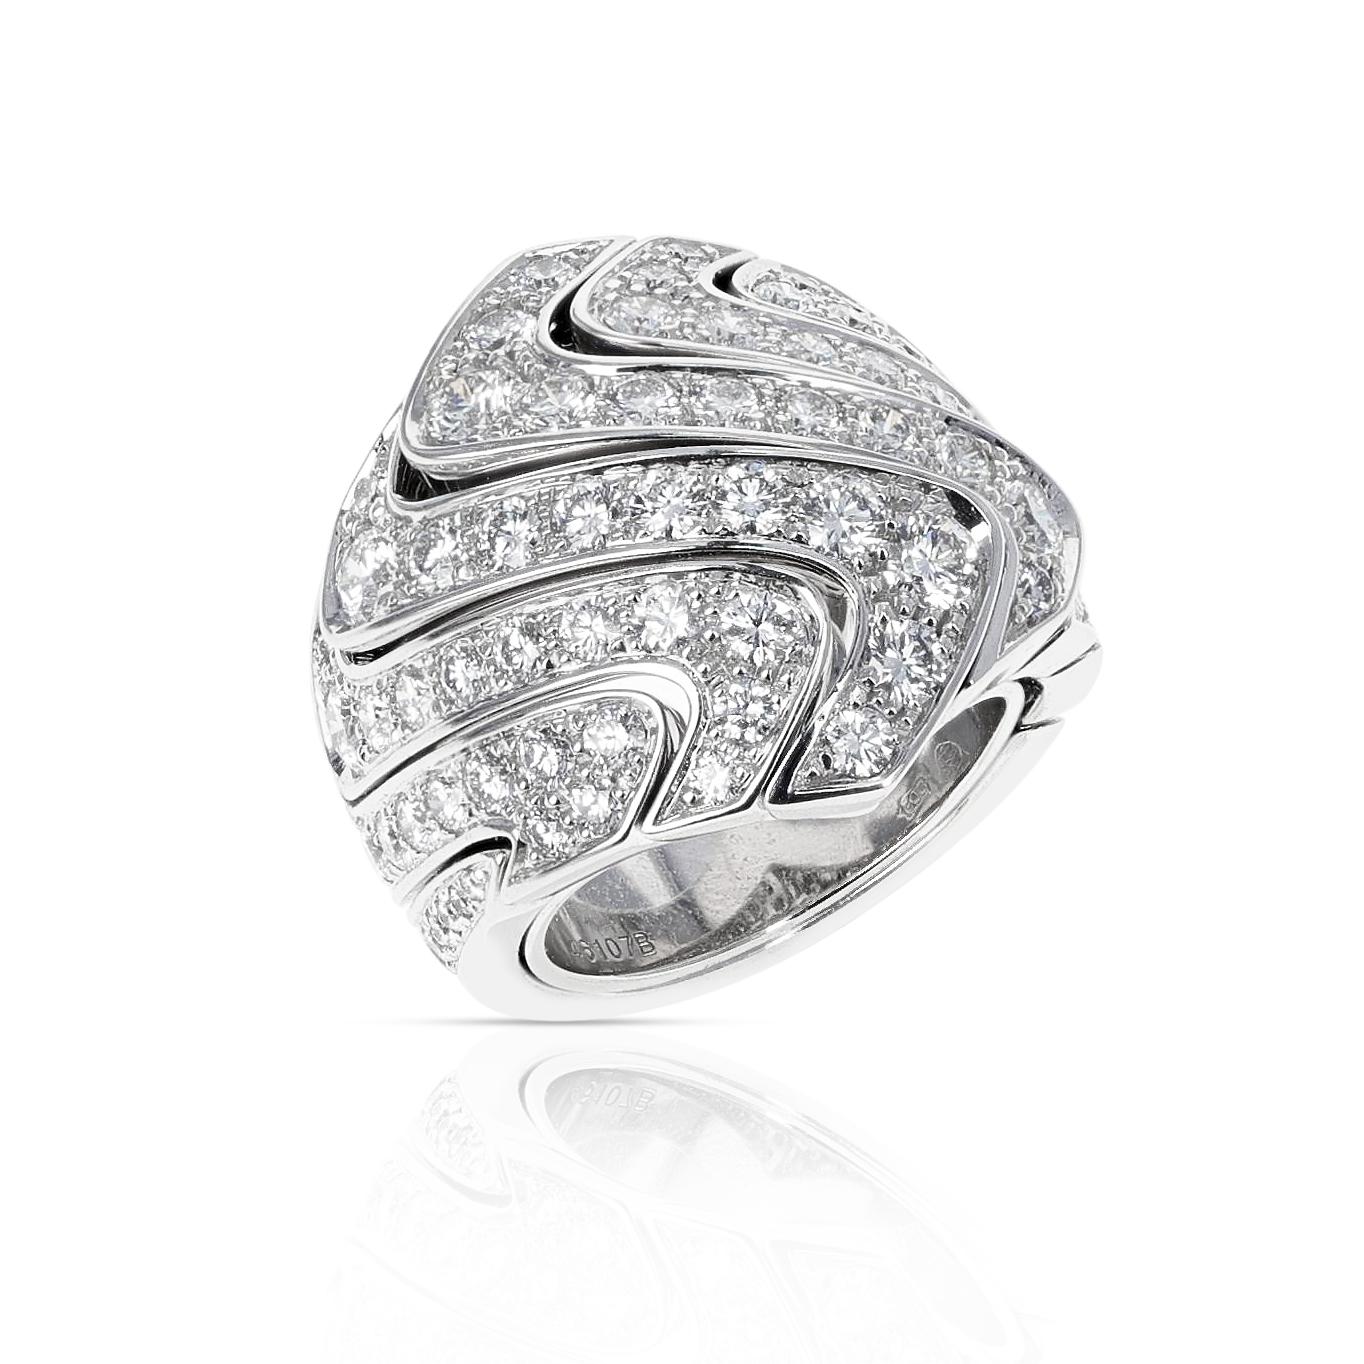 Un bracelet Cartier de 4 ct. Bague de cocktail en or 18 carats avec diamant rond. Le poids total est de 29,54 grammes. La taille de la bague est de 5,50.  

SKU : 509-AAEQJSJM